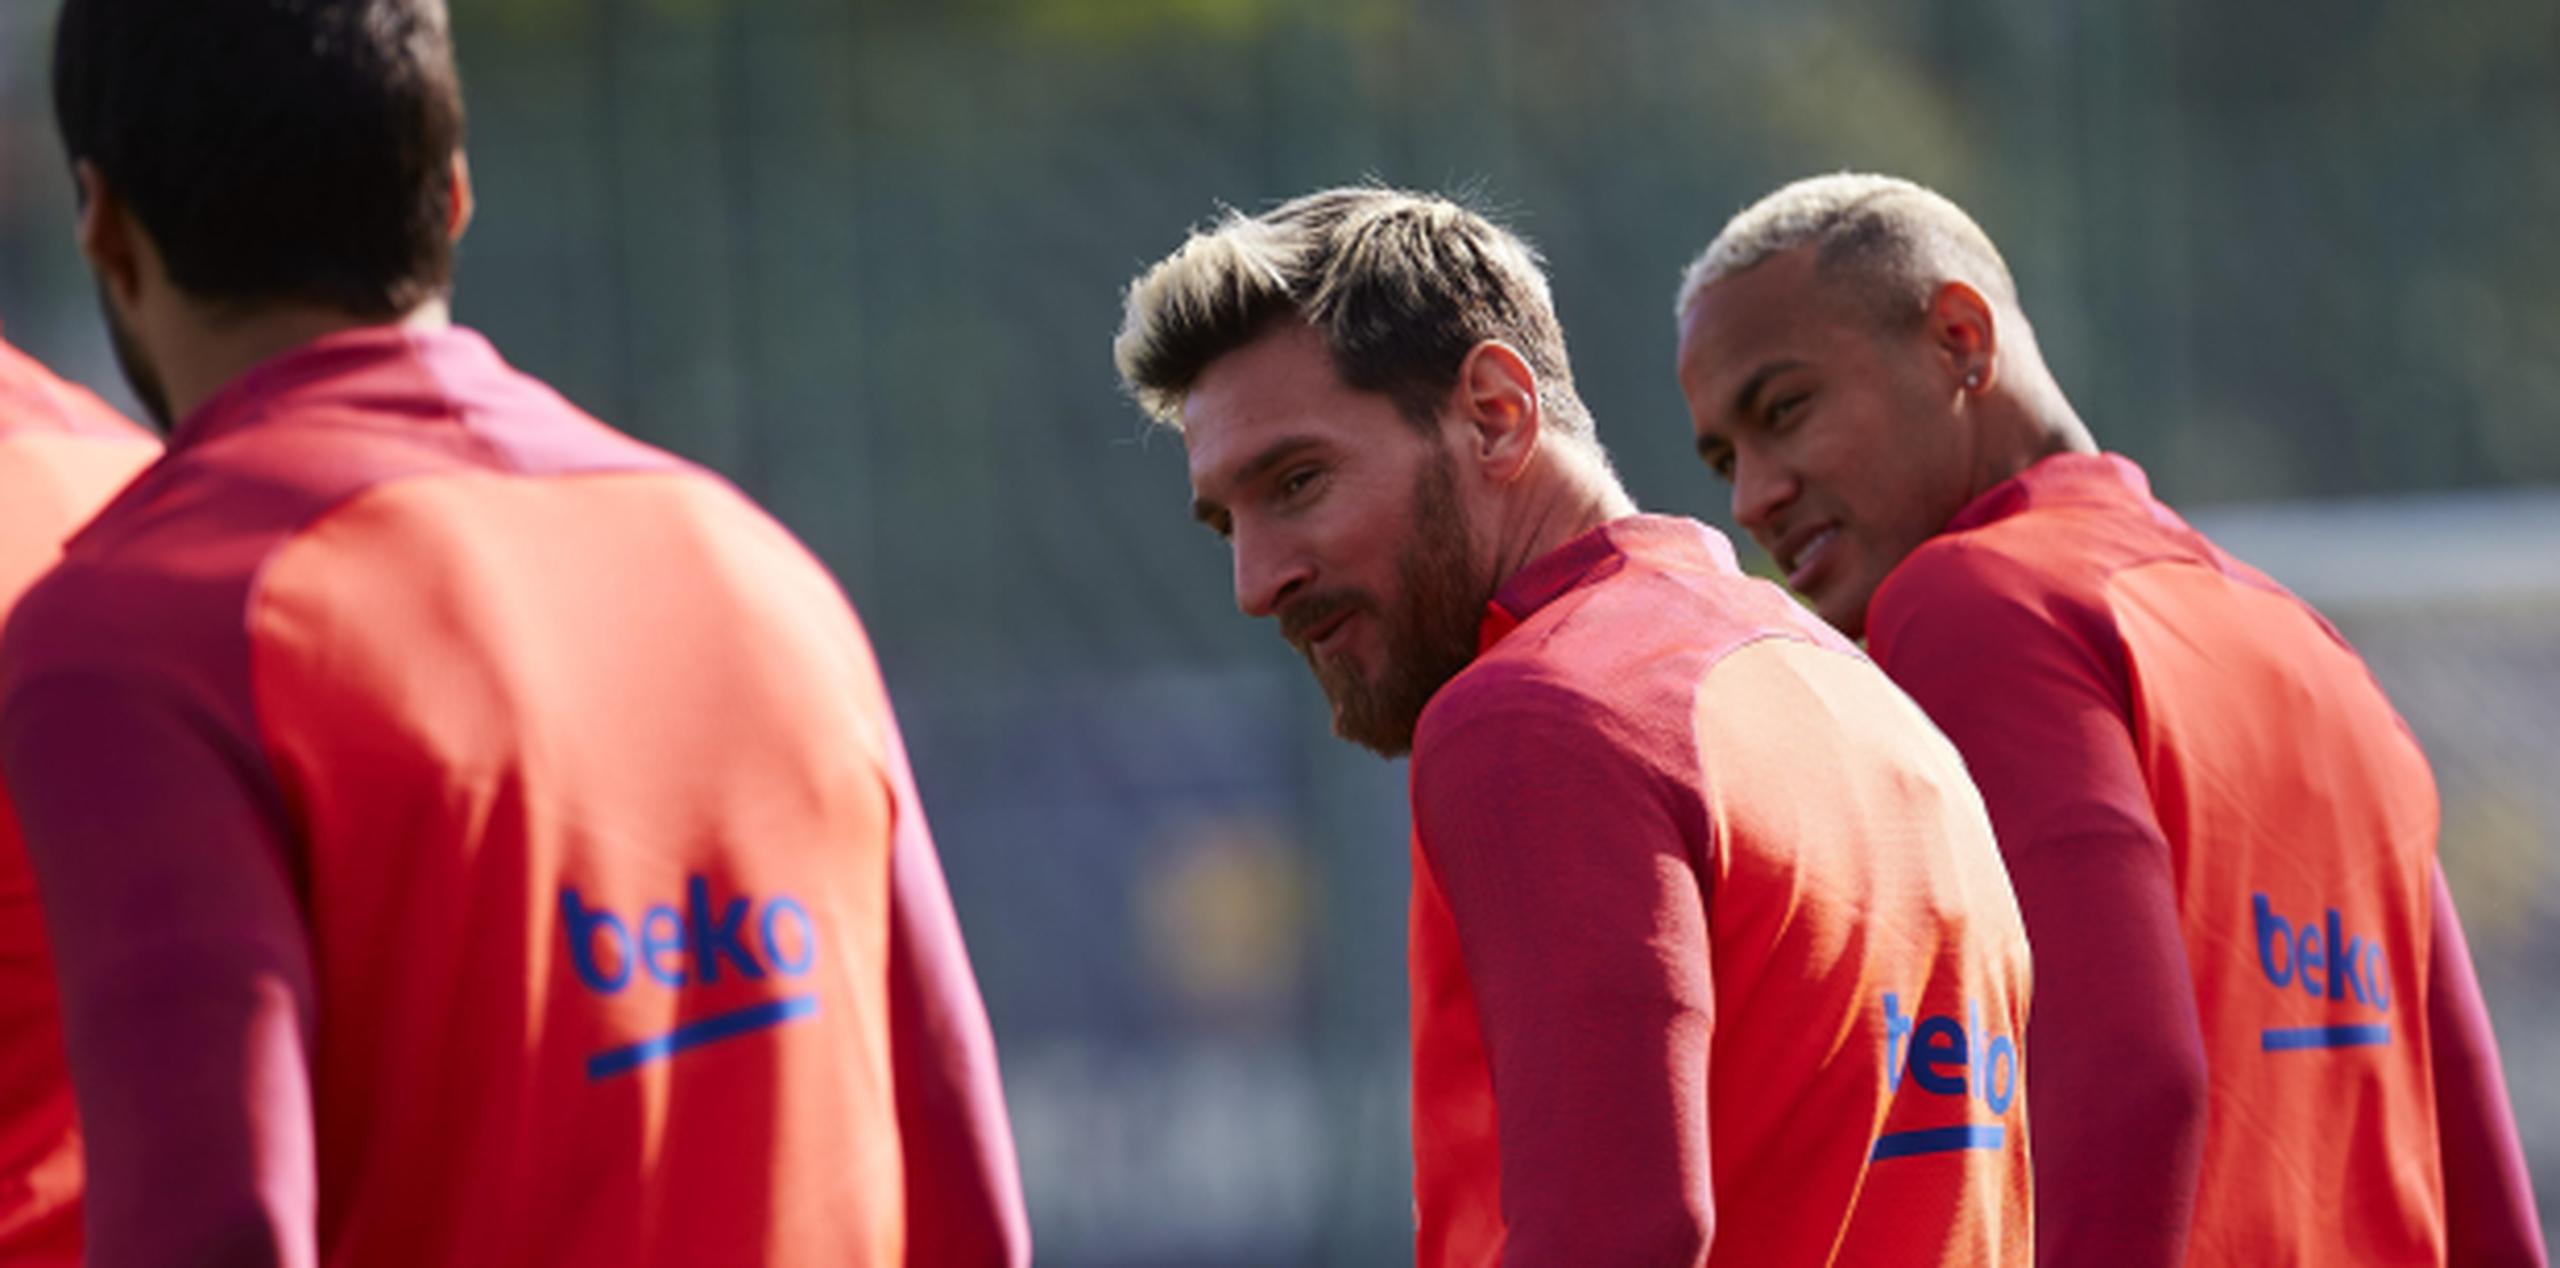 Barcelona ha ganado solamente uno de tres partidos en la liga desde que Messi quedó lesionado. (Foto/Agencia EFE)